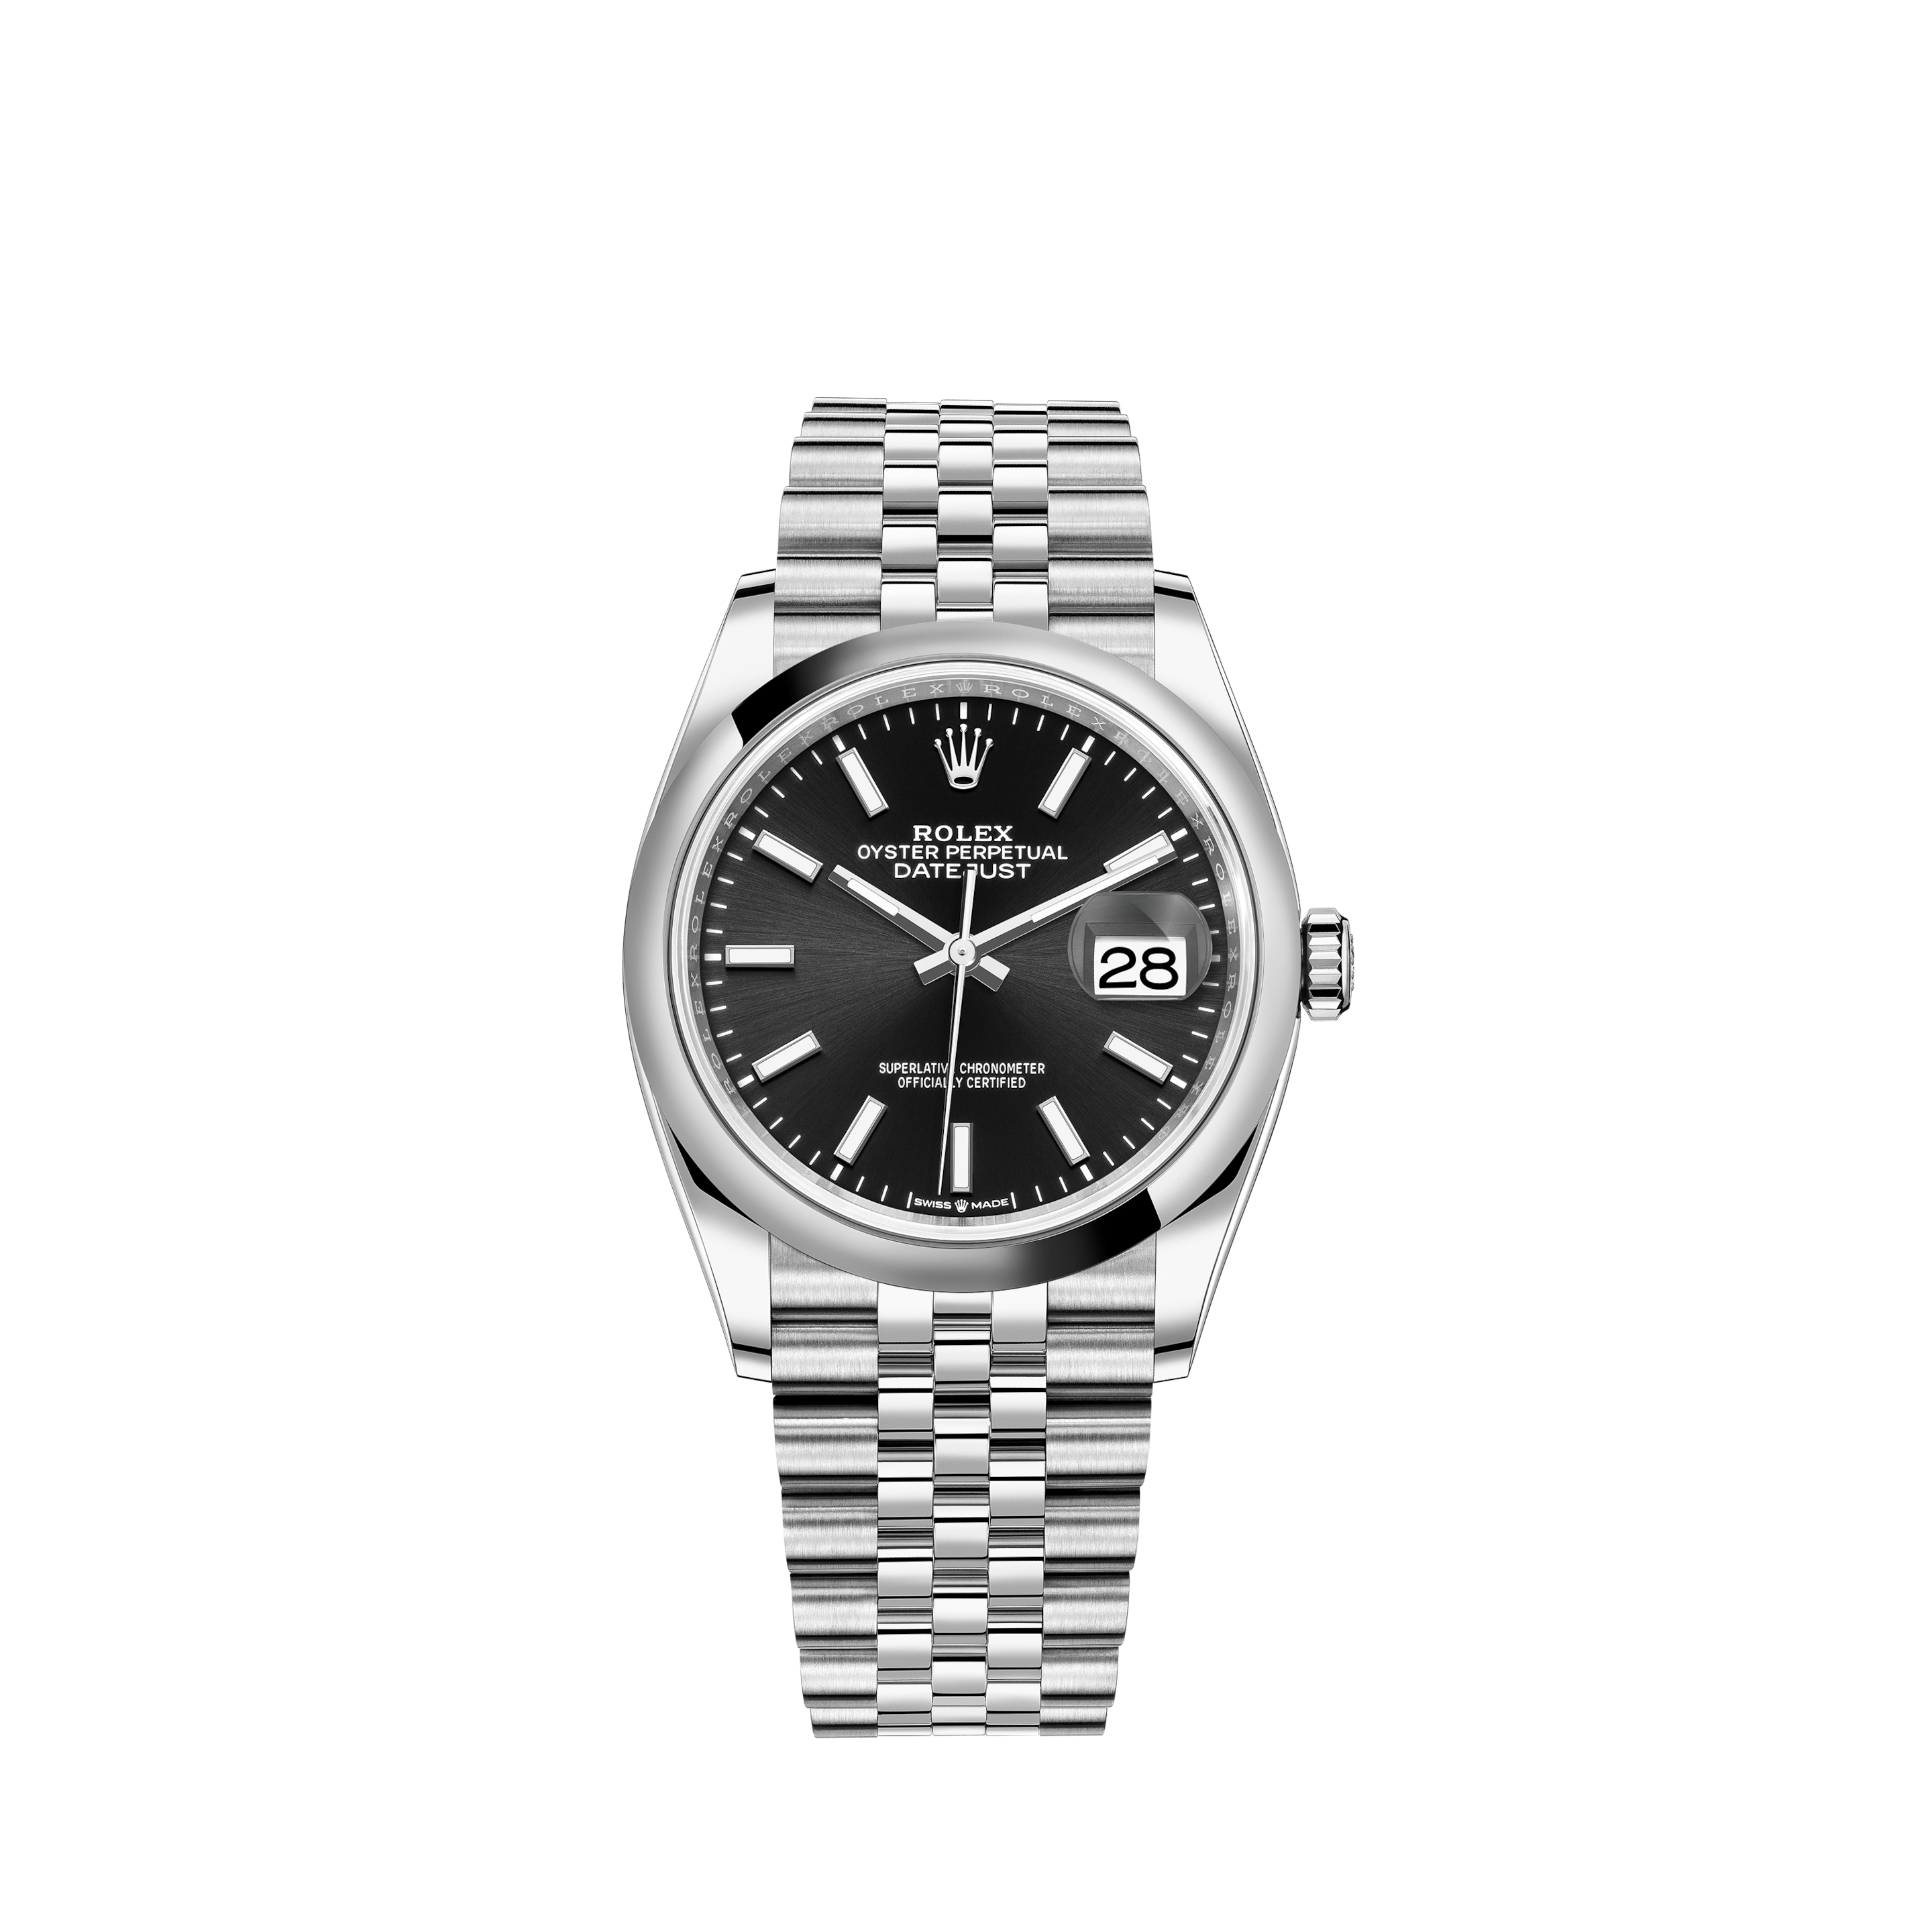 Rolex Submariner Date Men's Luxury Watch 16610